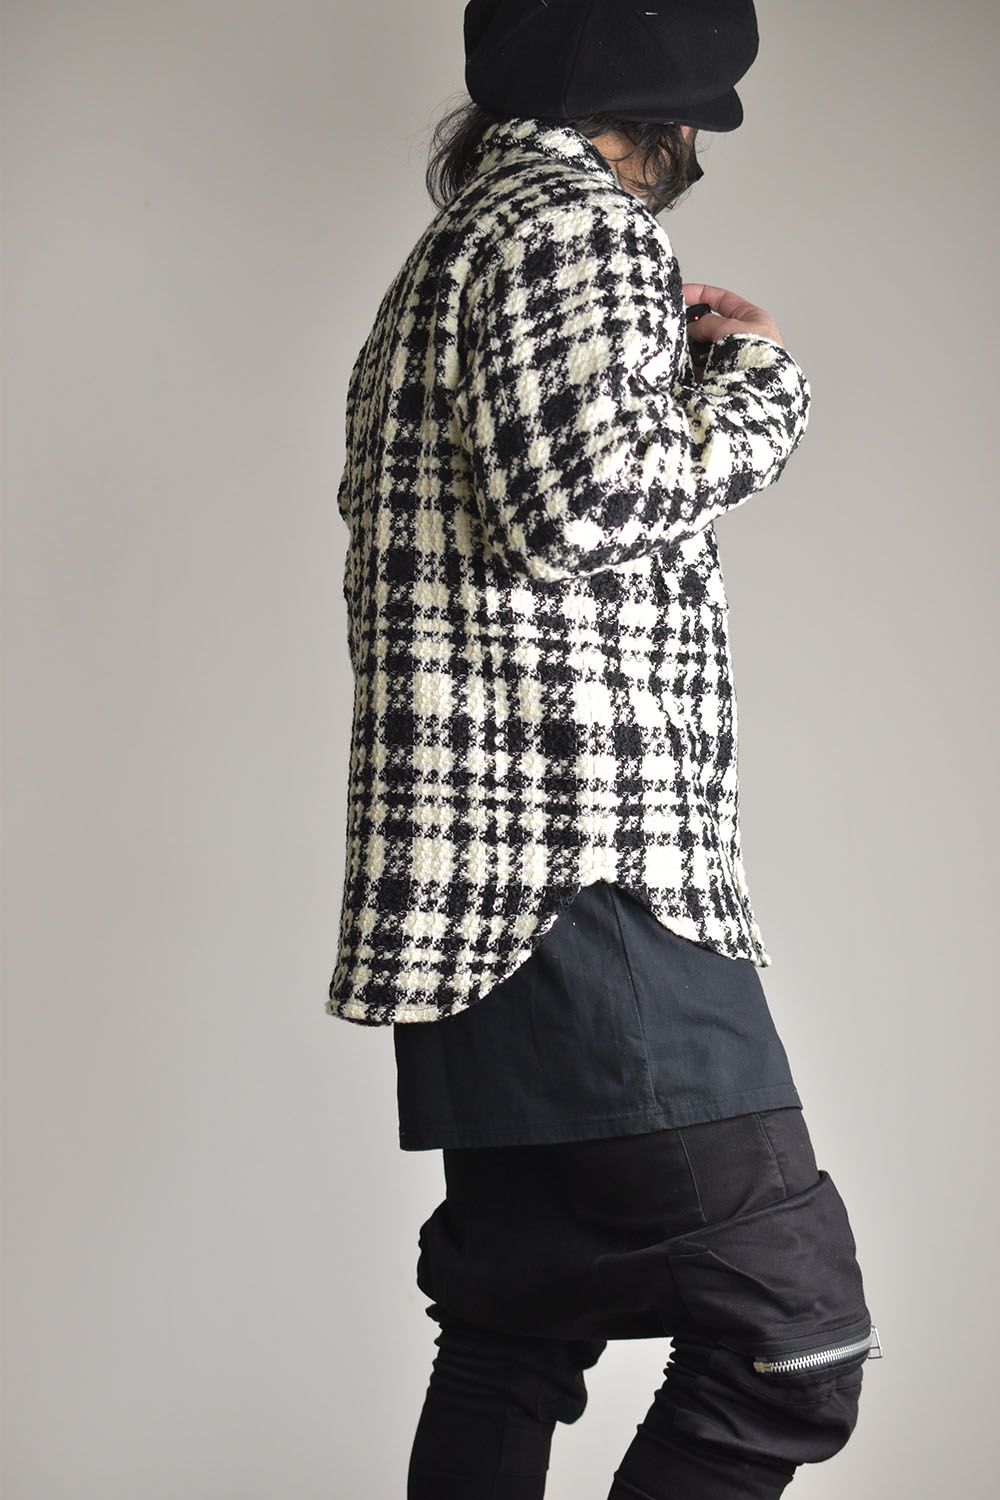 Houndtooth Check Shirt Jacket"Black×White"/ハウンズトゥースチェックシャツジャケット"ブラック×ホワイト"